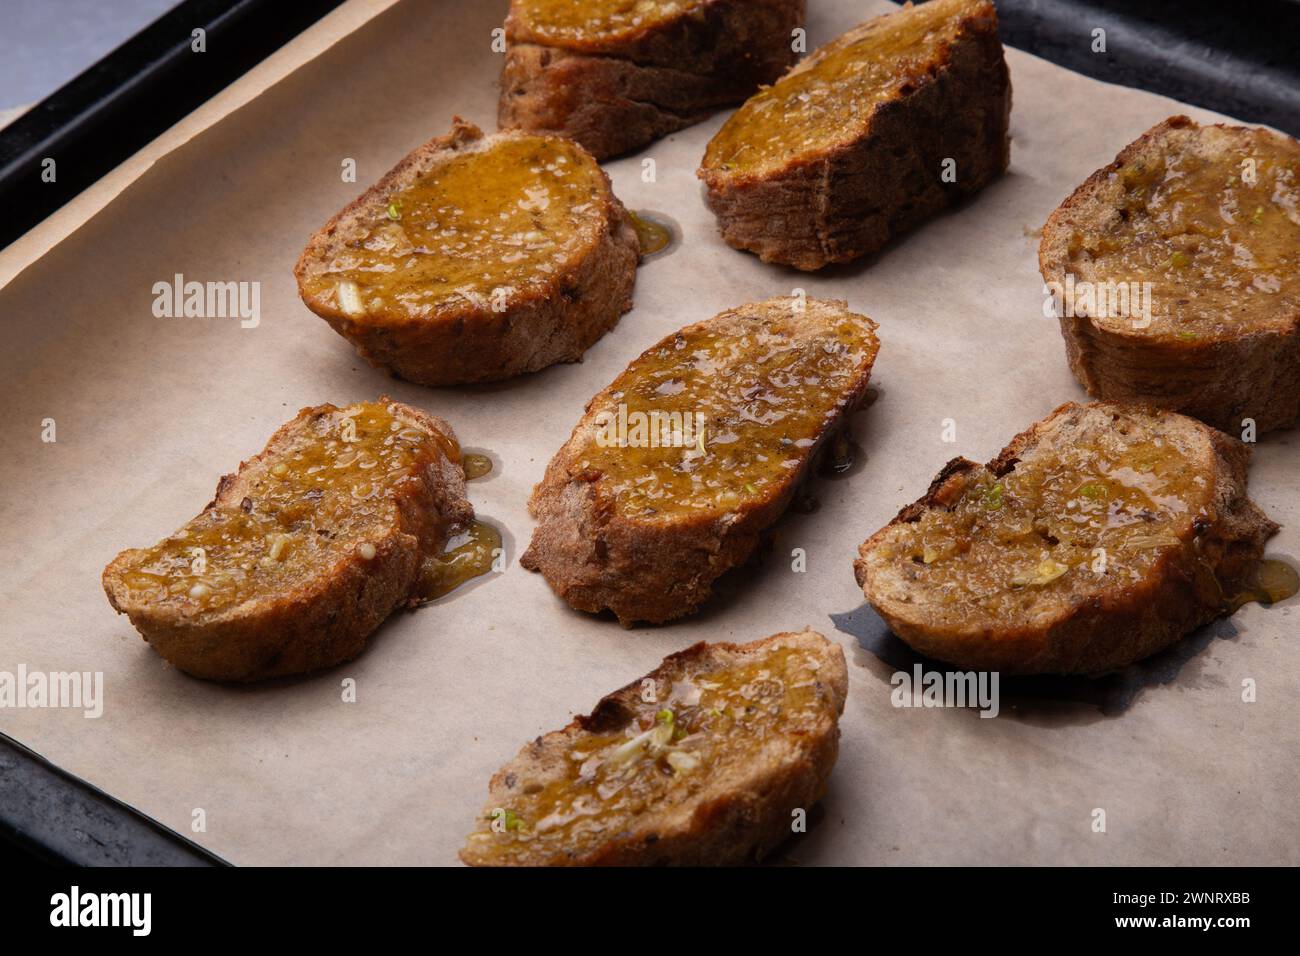 Homemade Honey-Glazed Whole Wheat Toasts on Baking Sheet. Stock Photo